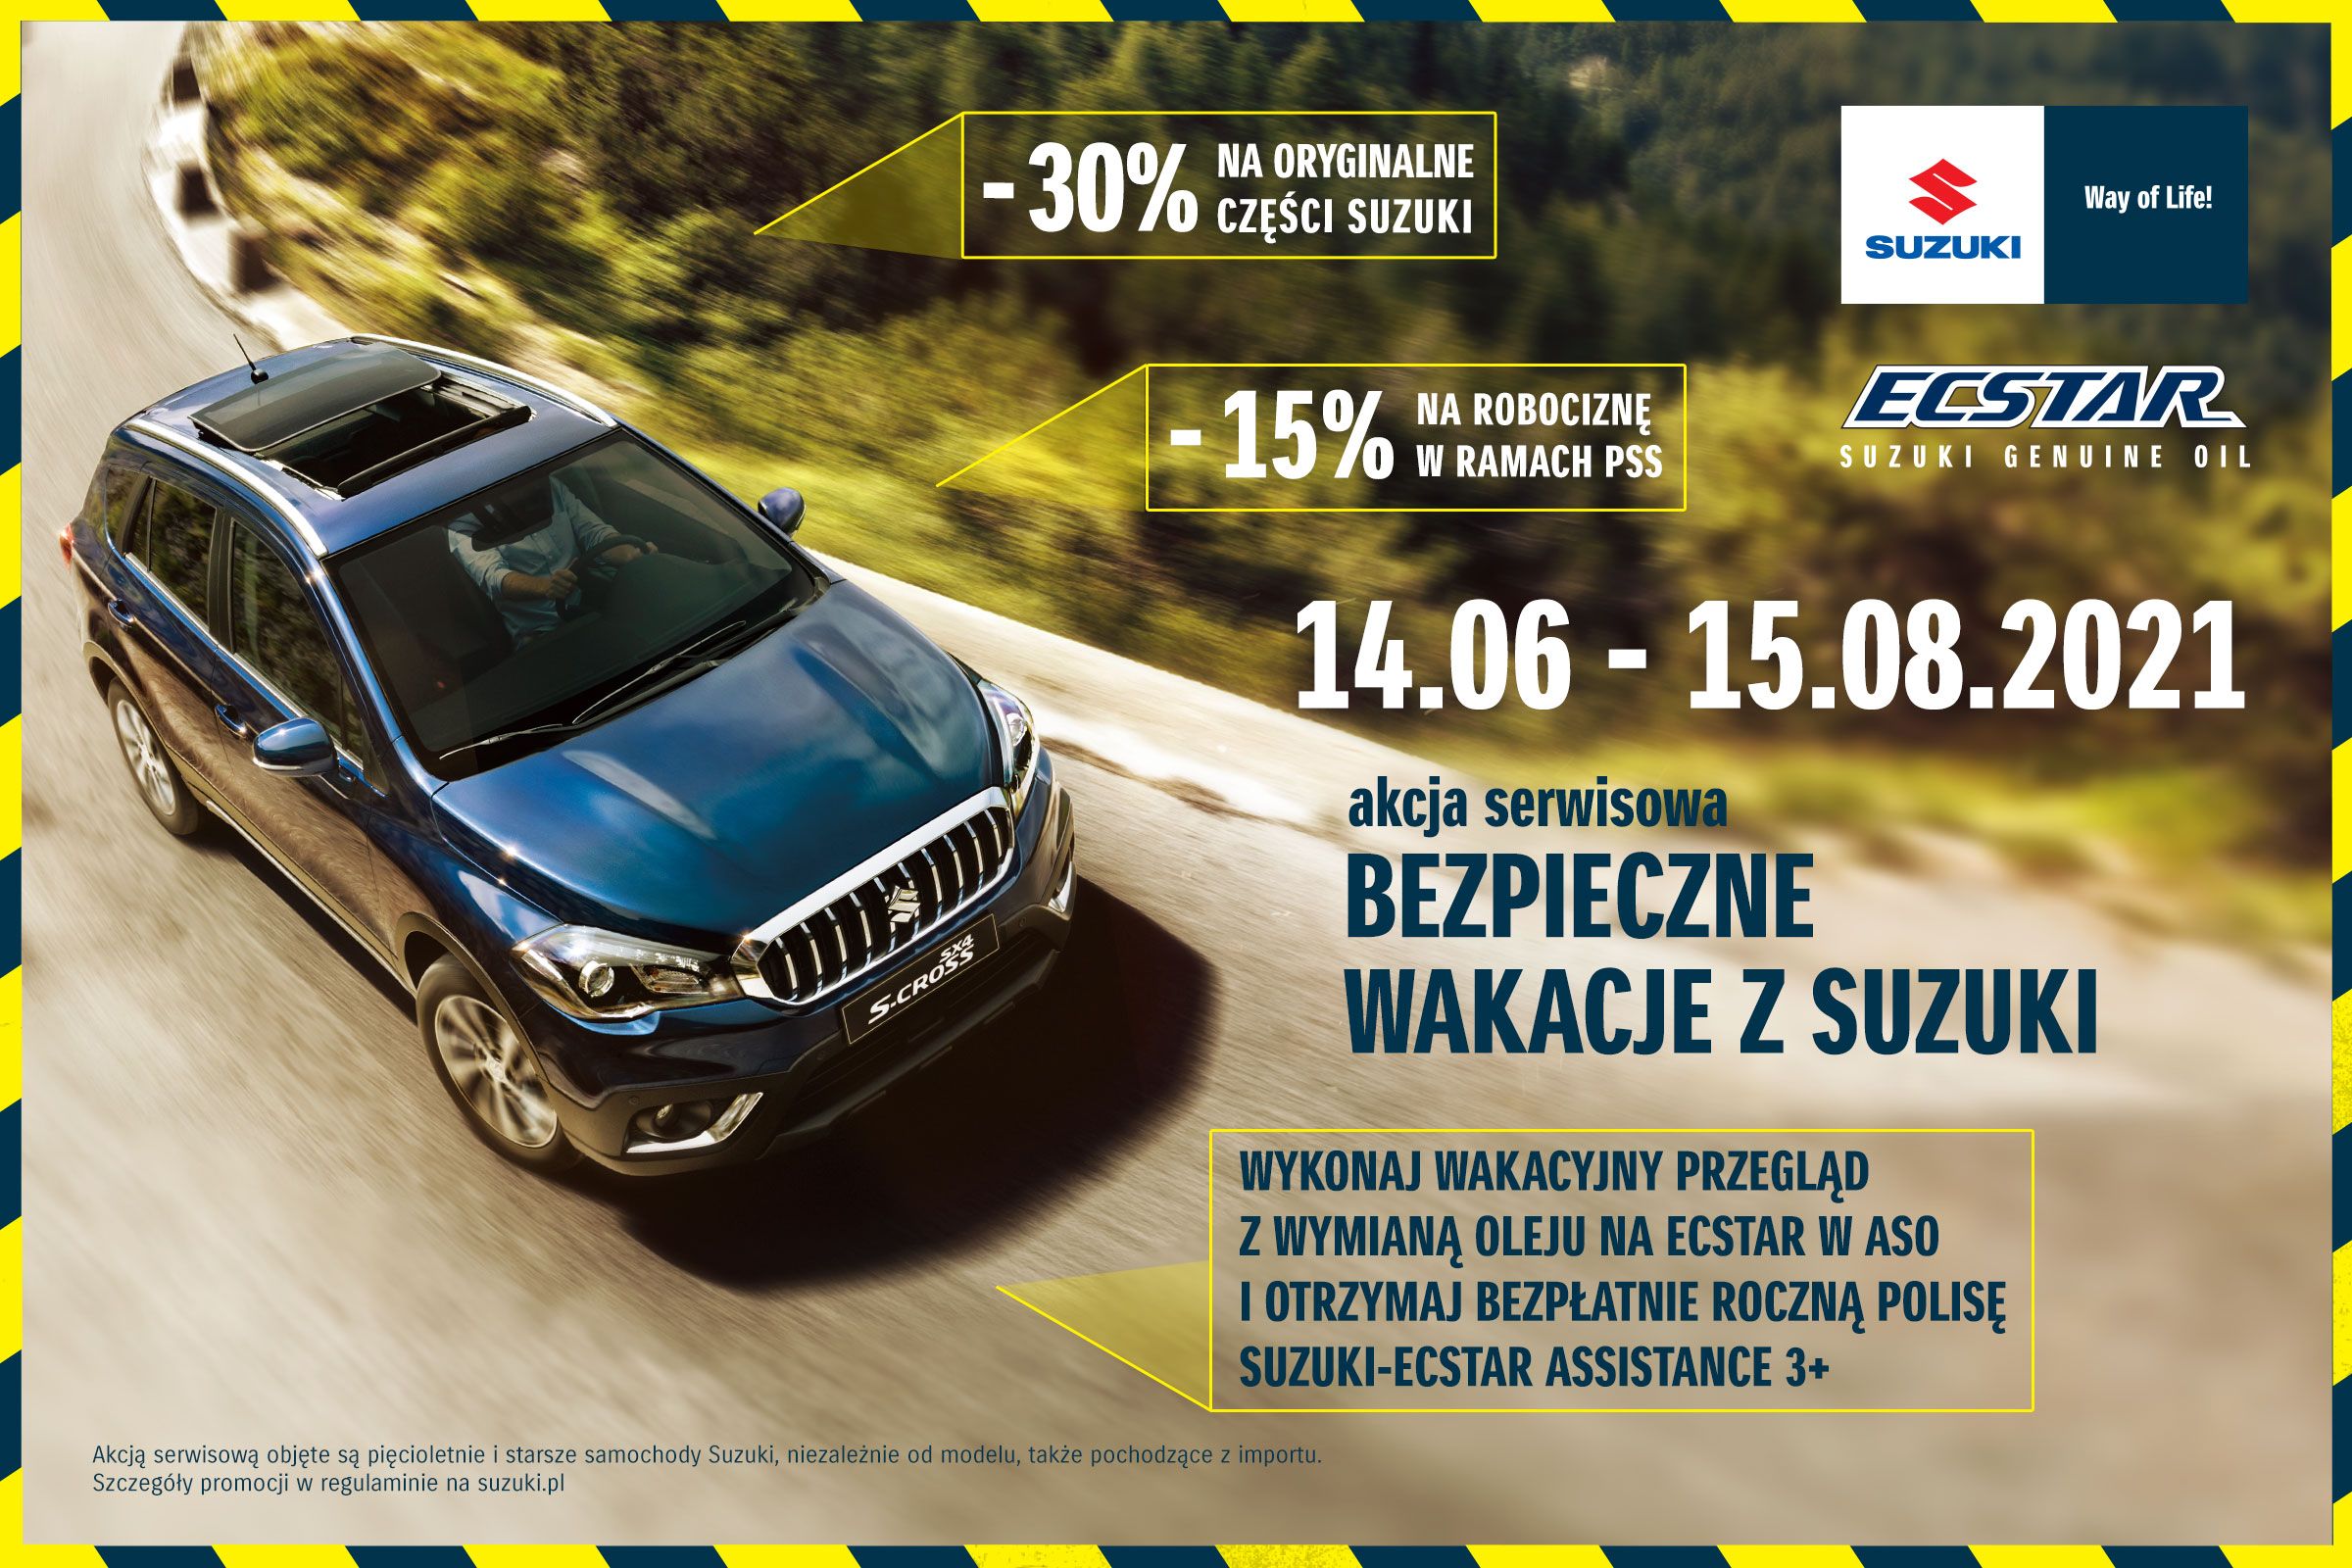 Rusza akcja serwisowa "Bezpieczne wakacje z Suzuki